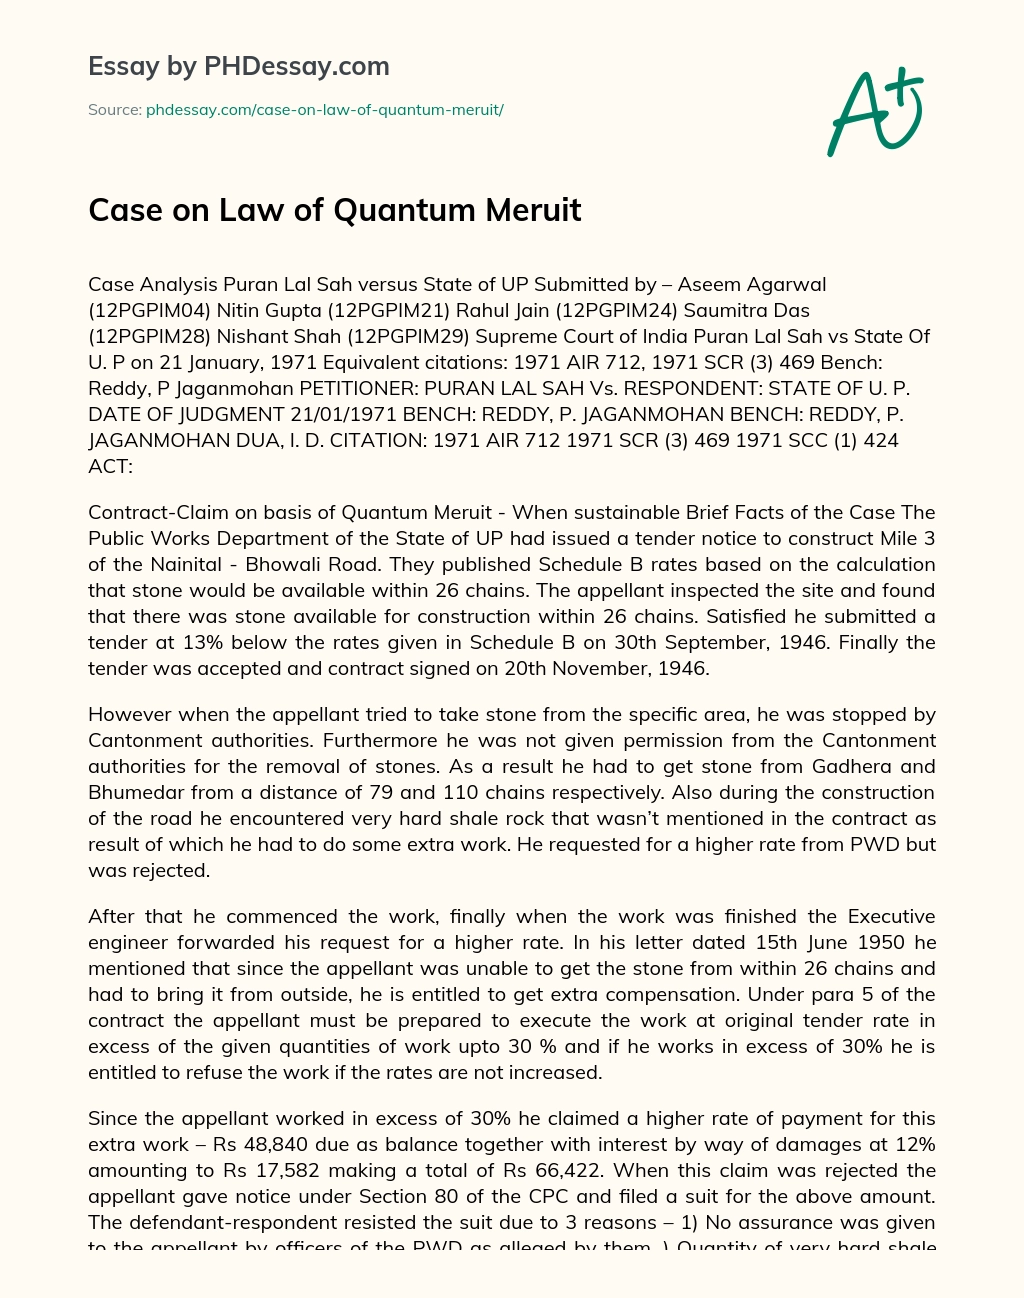 Case on Law of Quantum Meruit essay